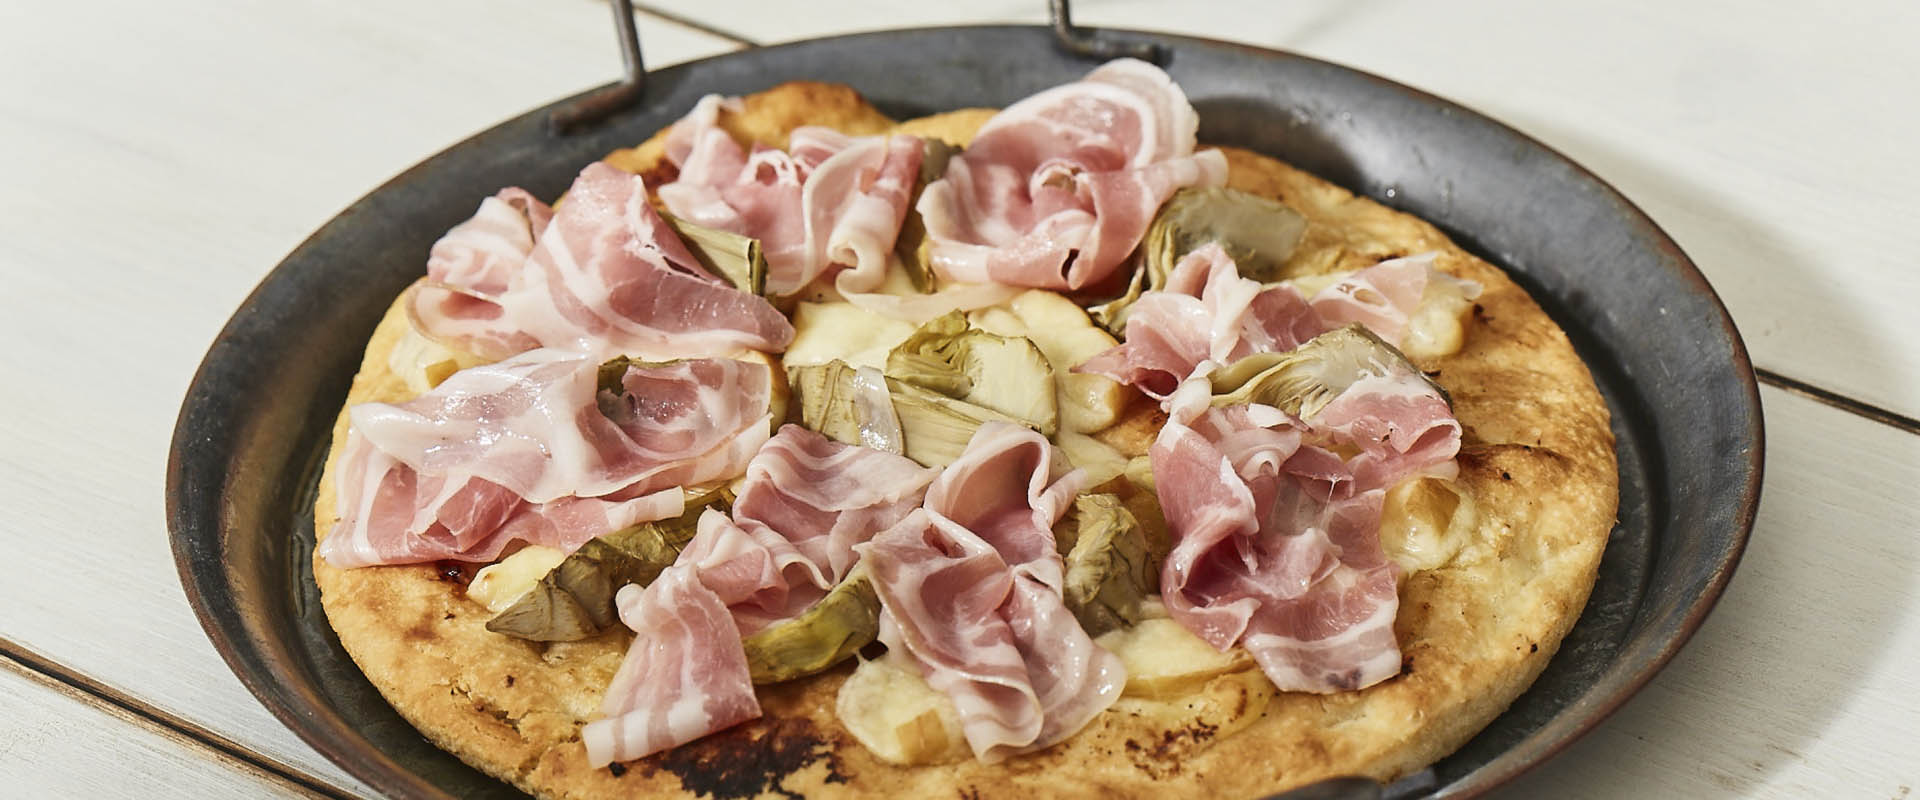 Pizza Pancetta Arrotolata Carciofi Provola Affumicata